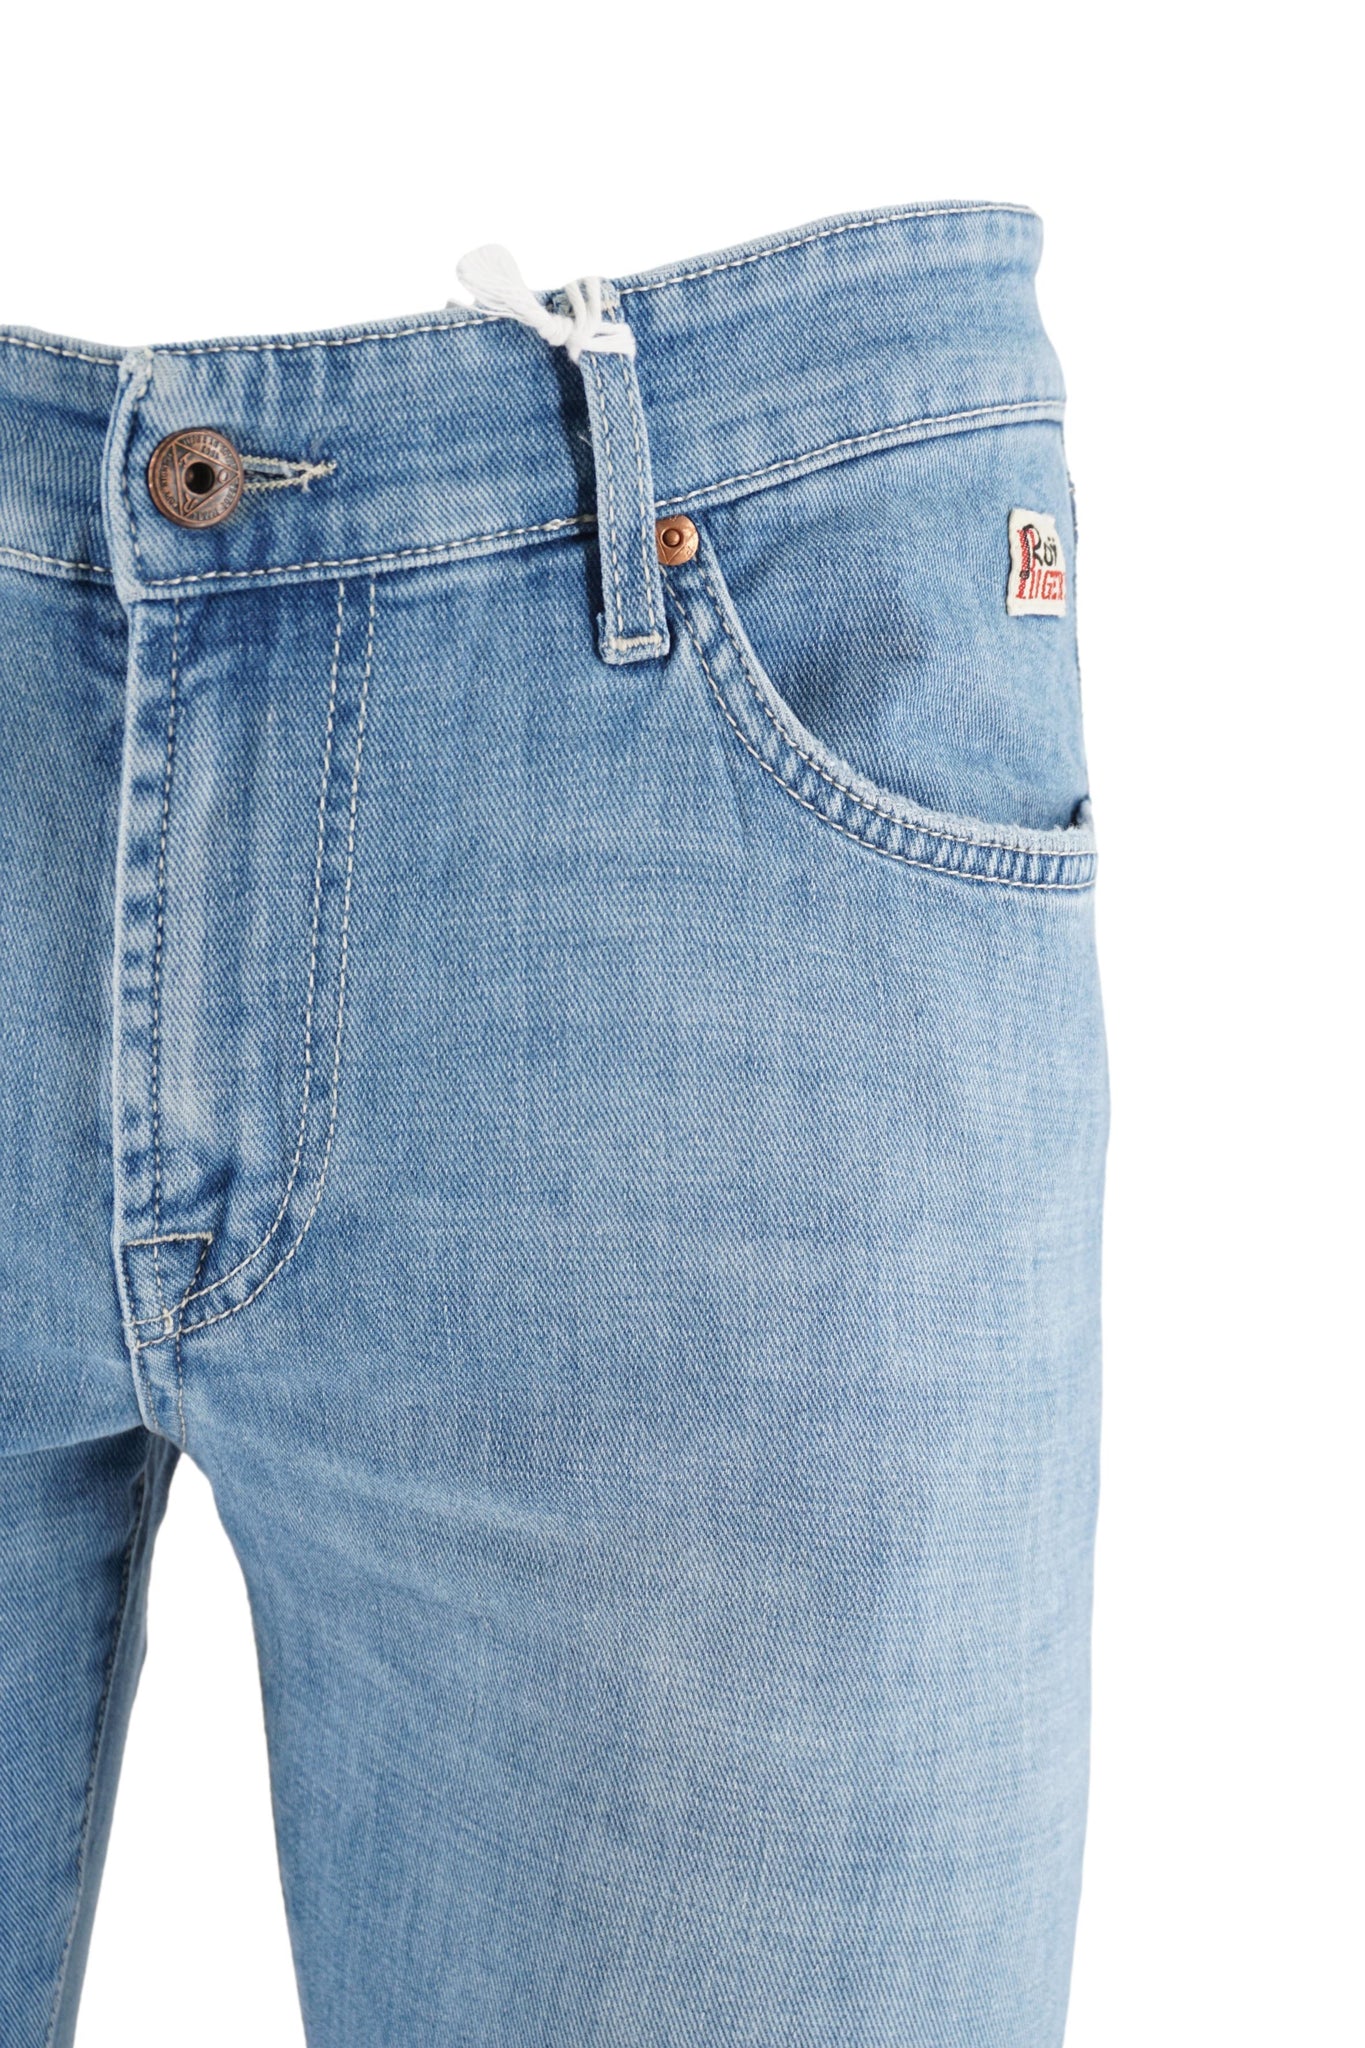 Jeans 518 Lavaggio Chiaro / Jeans - Ideal Moda